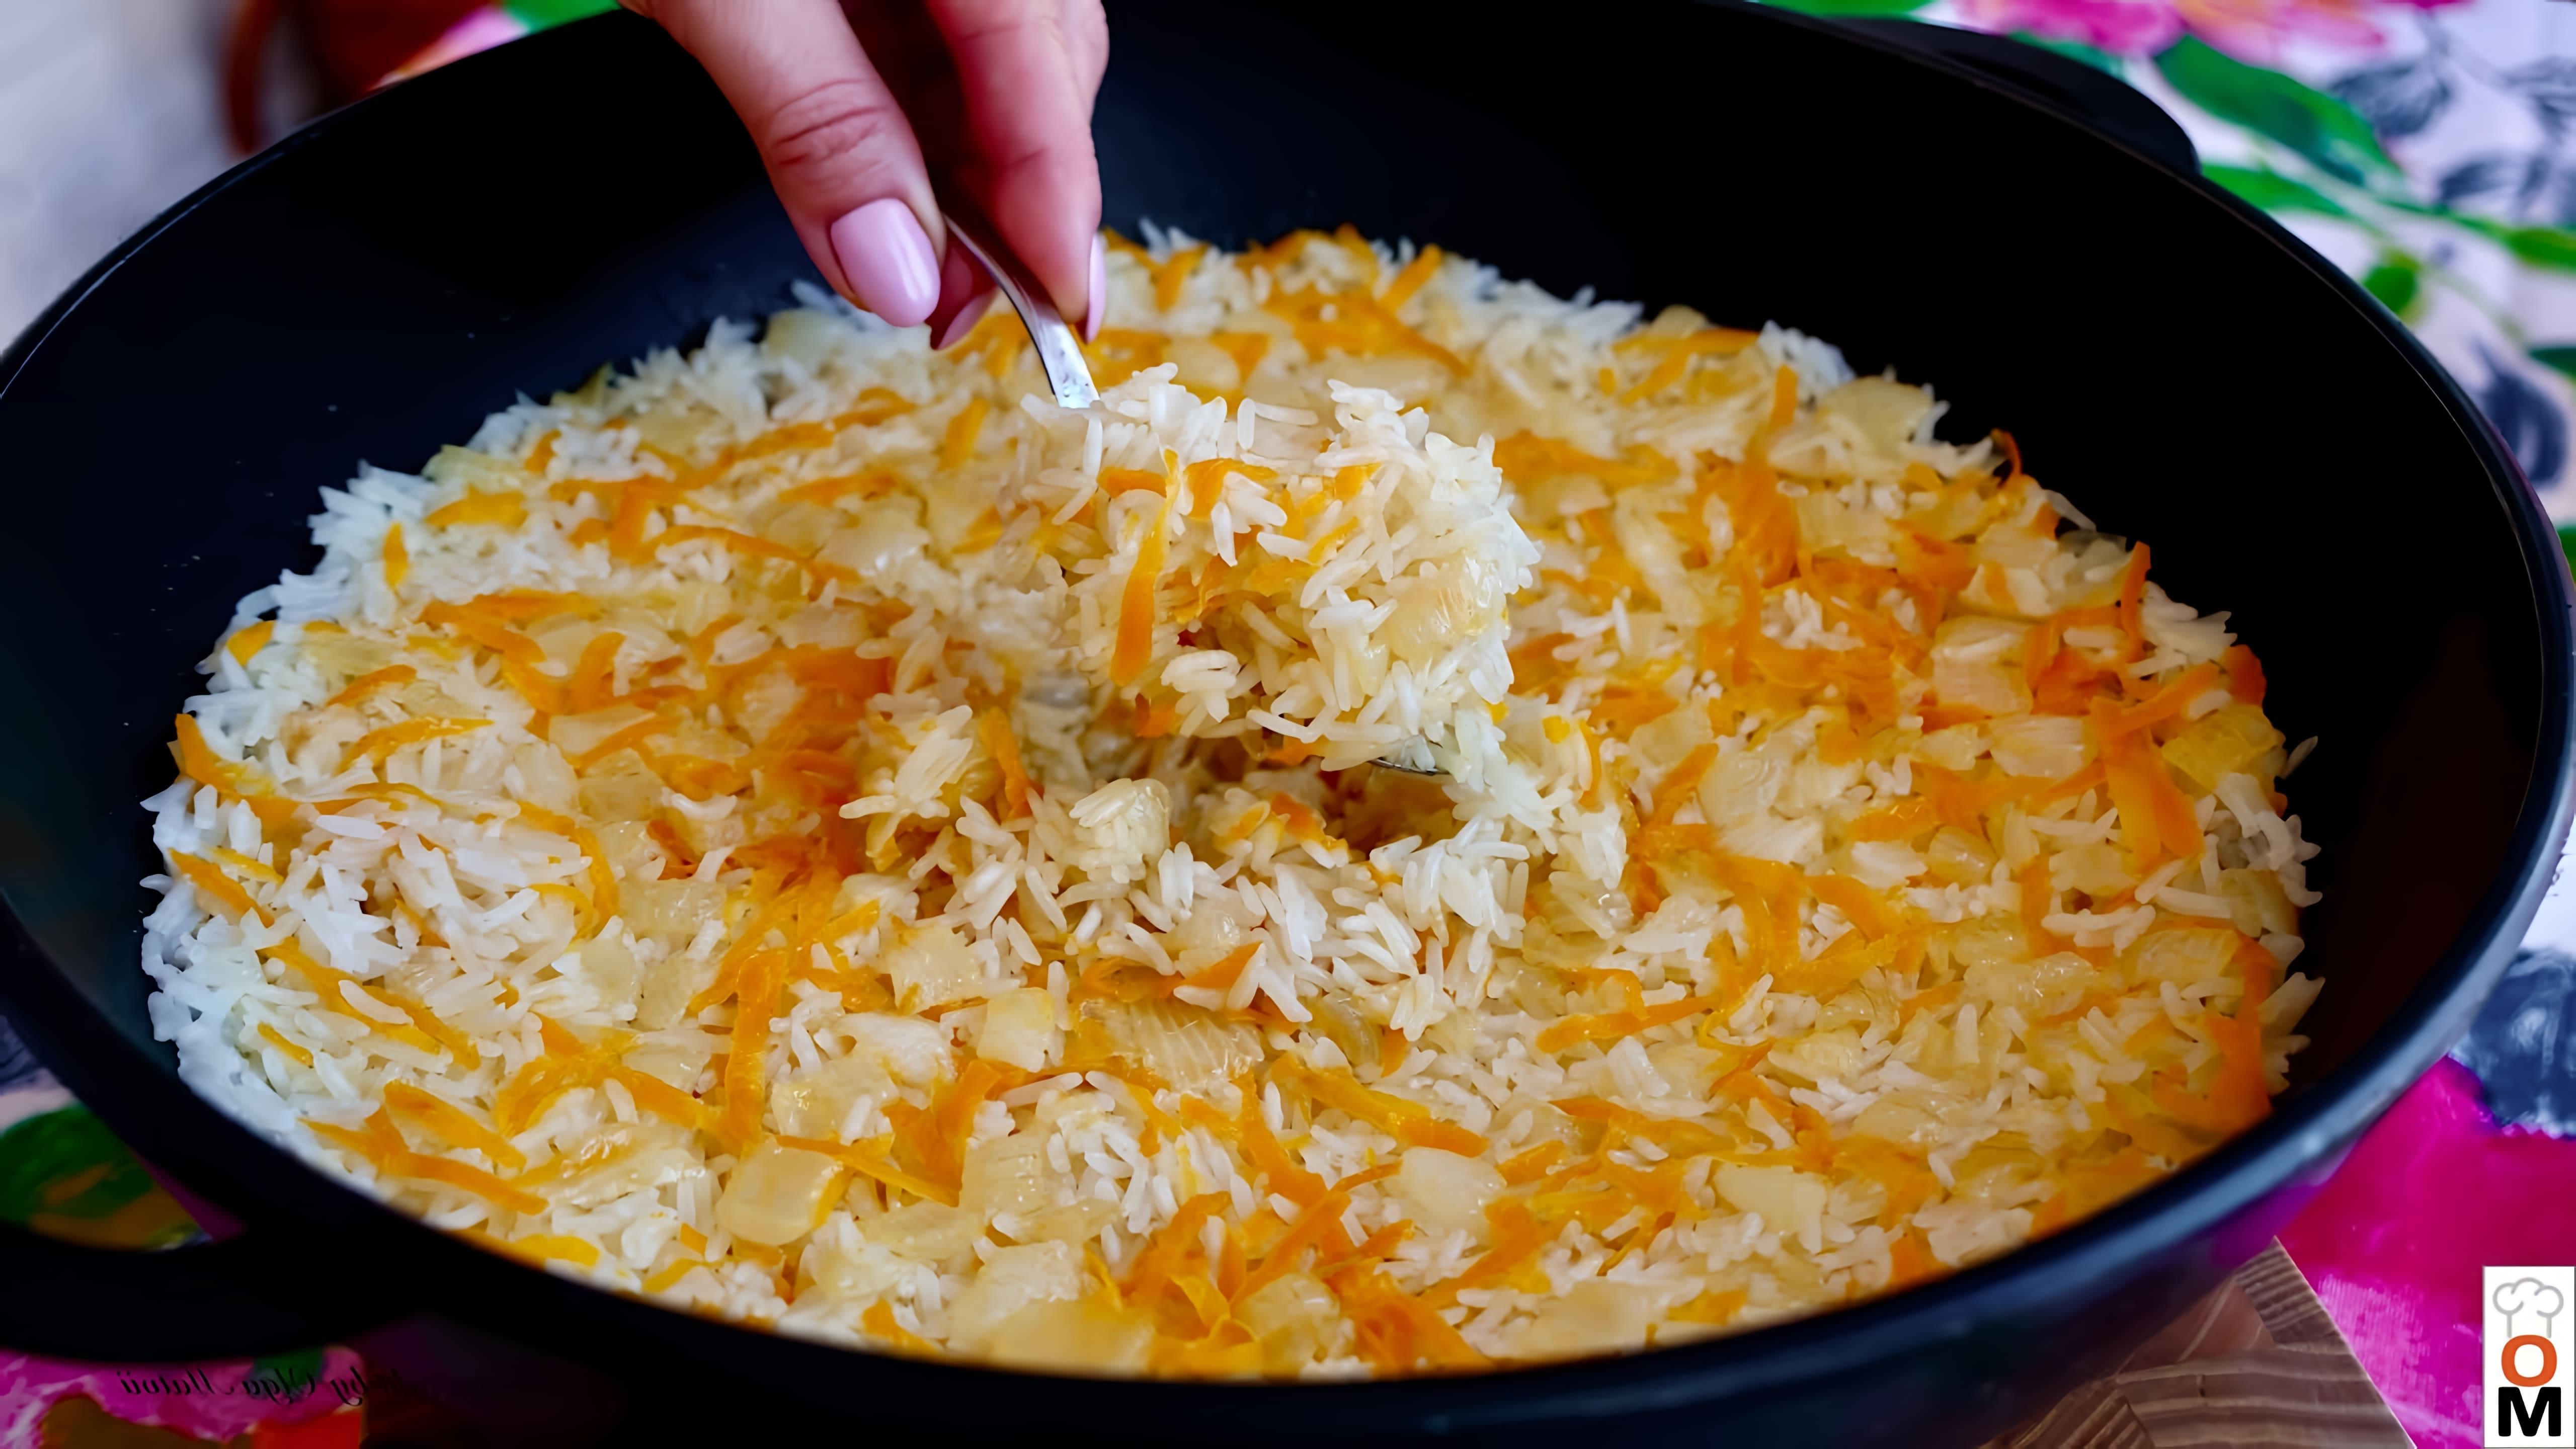 Видео рецепт приготовления риса, когда в холодильнике или кладовой есть только рис, морковь и лук